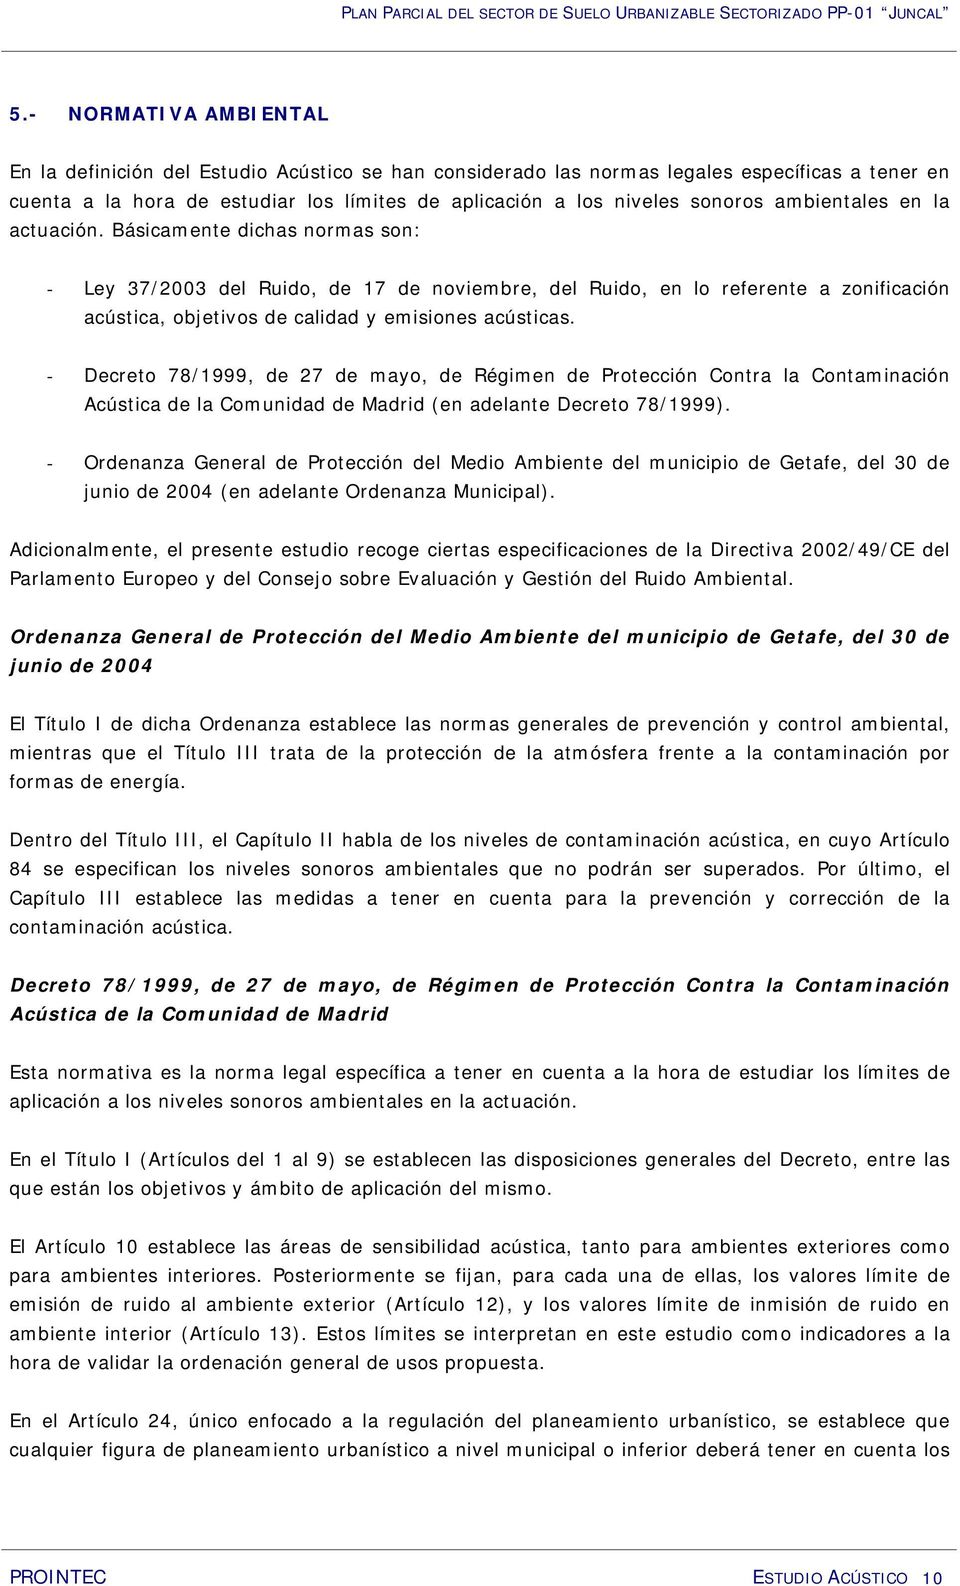 - Decreto 78/1999, de 27 de mayo, de Régimen de Protección Contra la Contaminación Acústica de la Comunidad de Madrid (en adelante Decreto 78/1999).